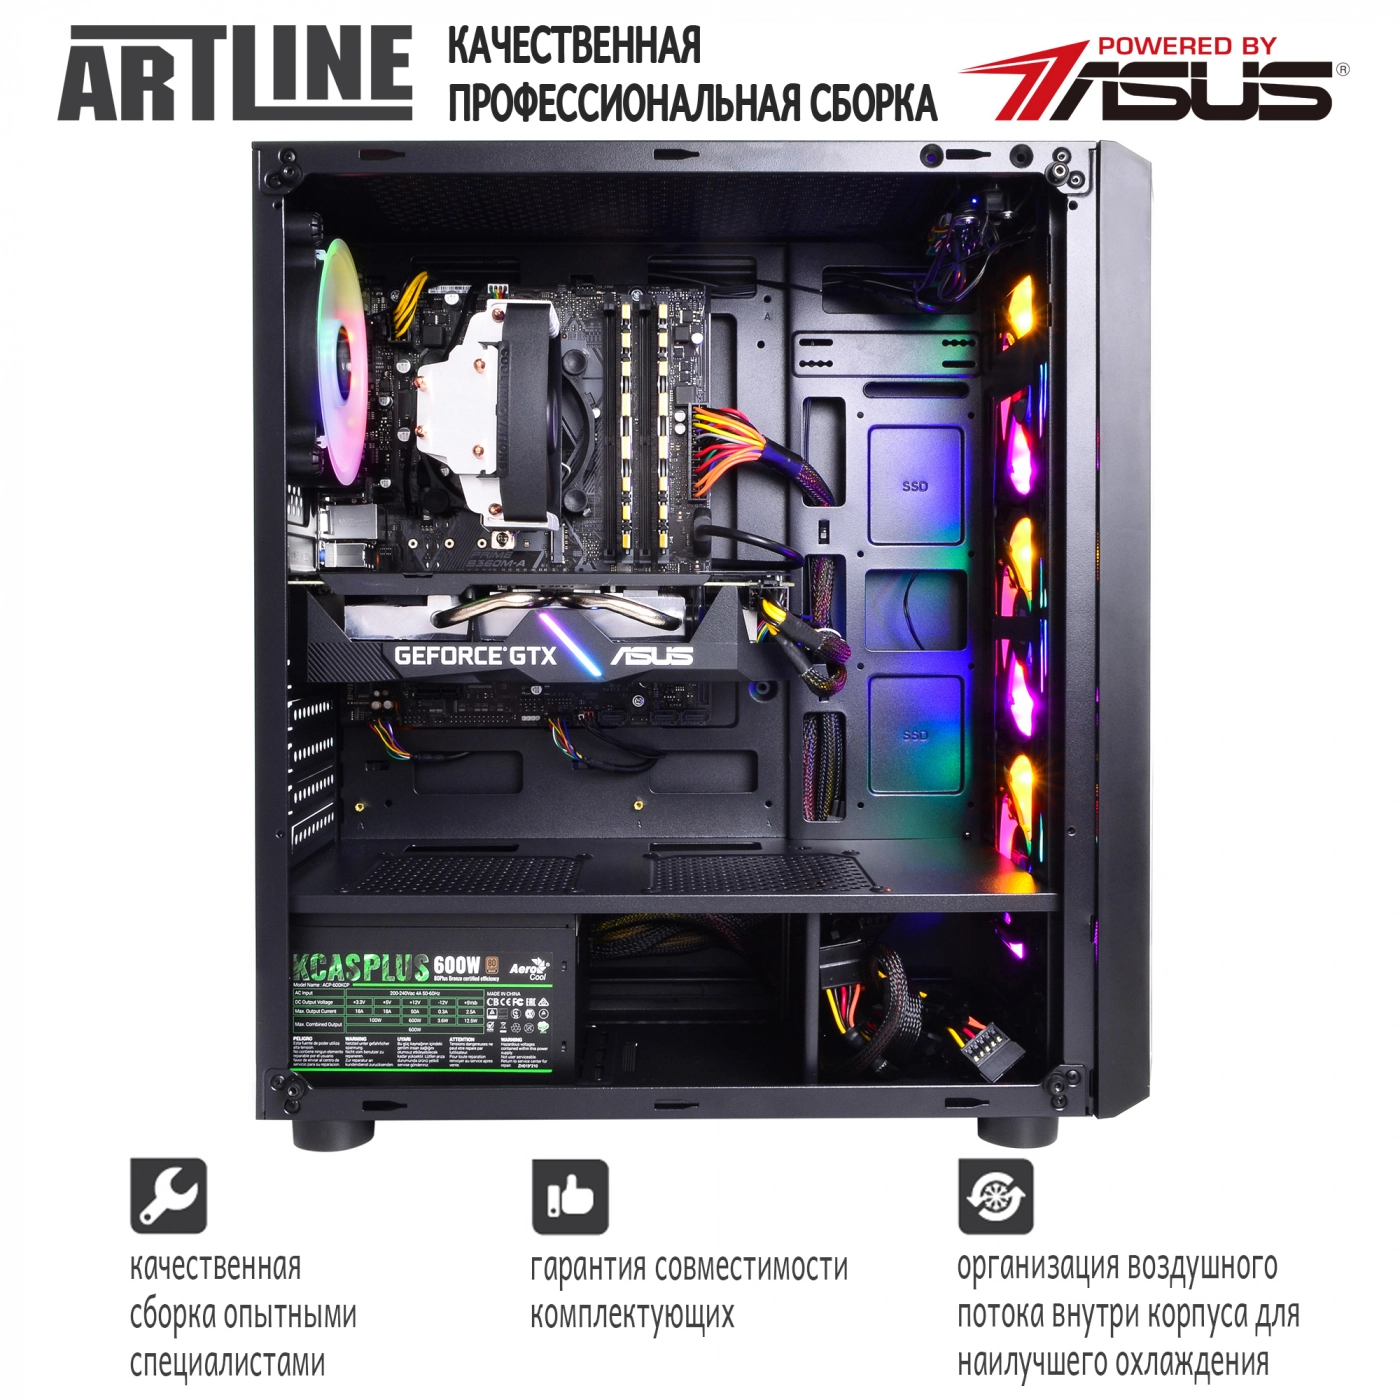 Купить Компьютер ARTLINE Gaming X53v11 - фото 9